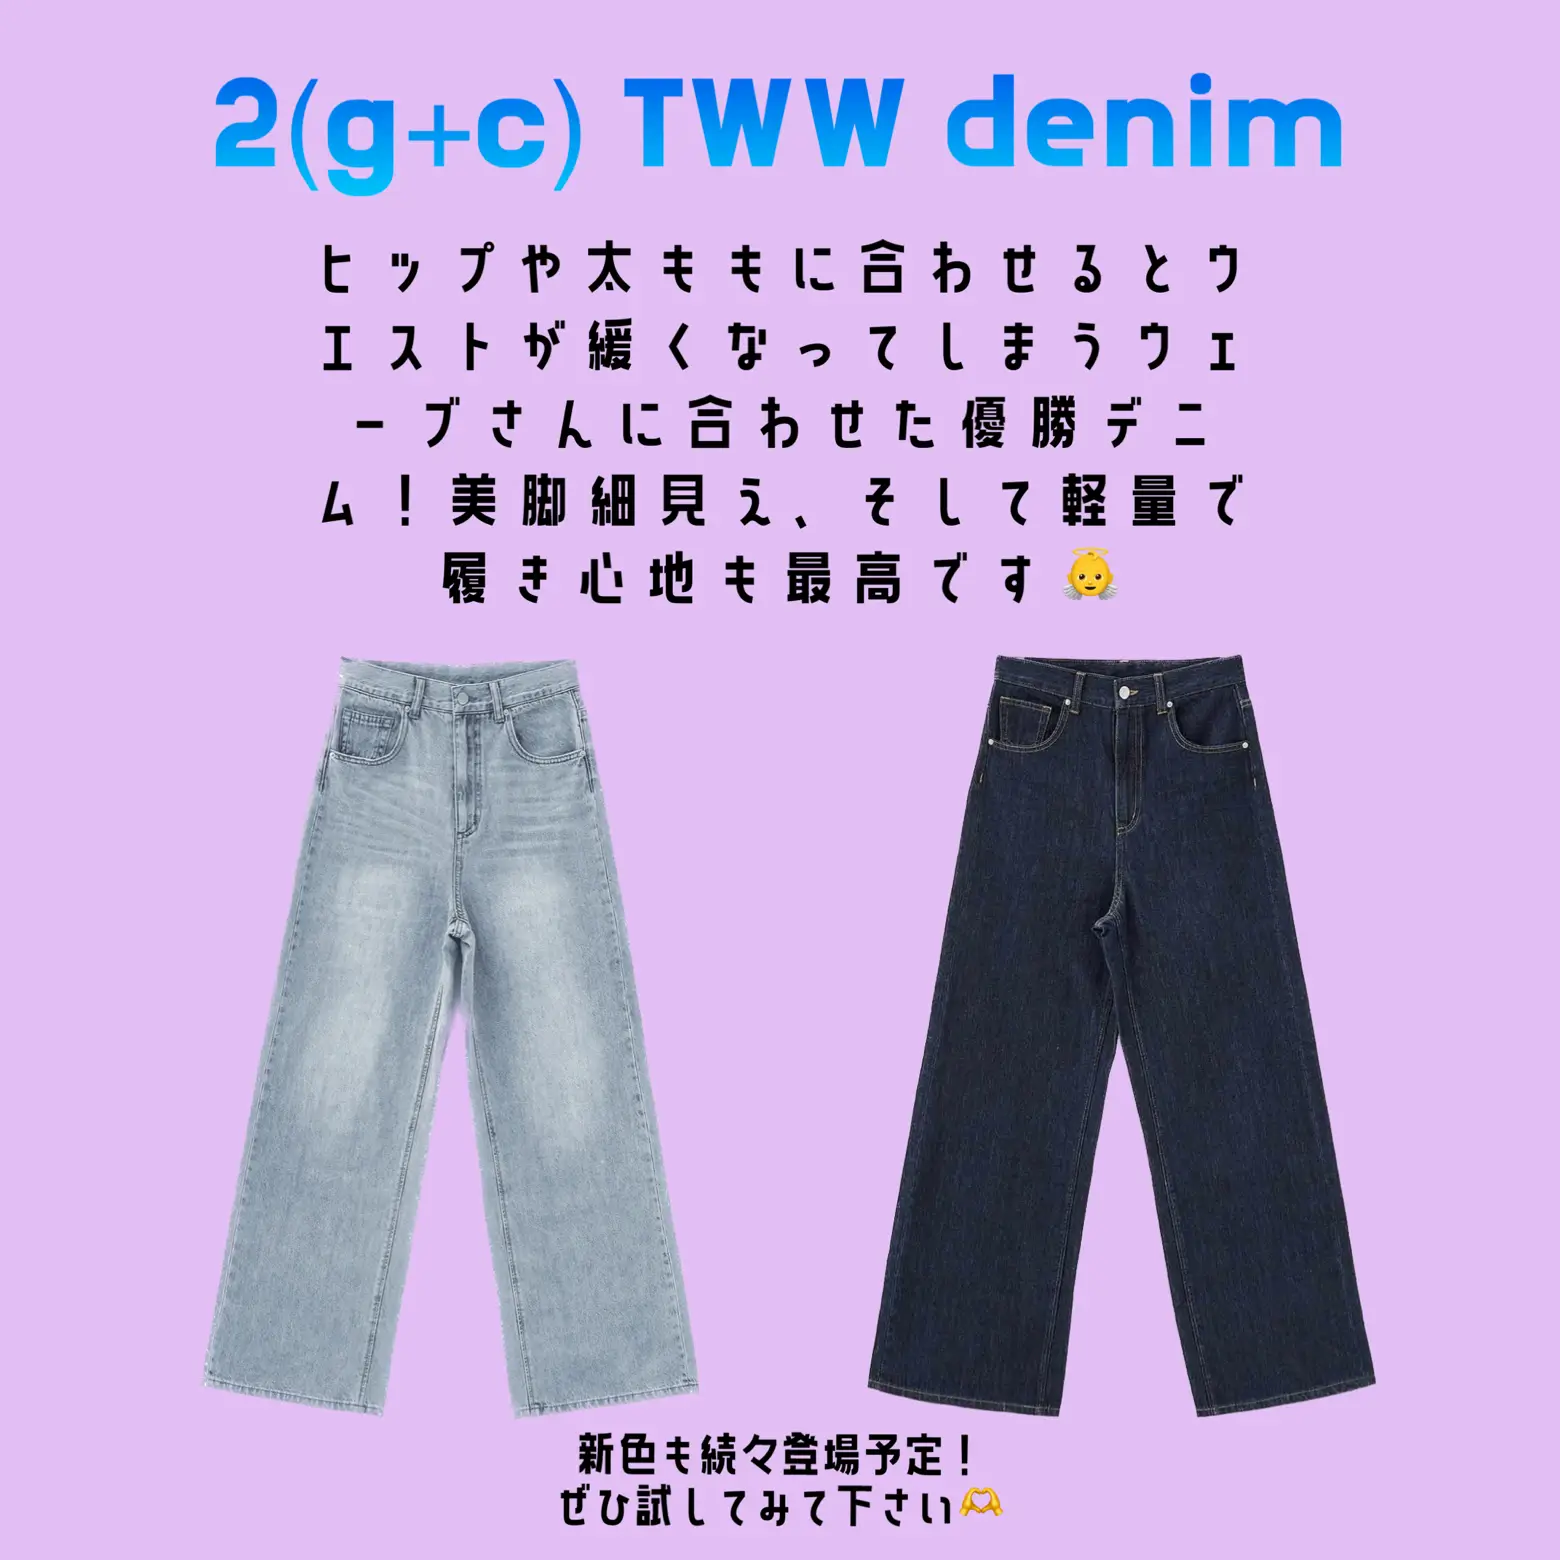 正規通販 TWWデニム 骨格ウェーブデニム /S XS デニム/ジーンズ 